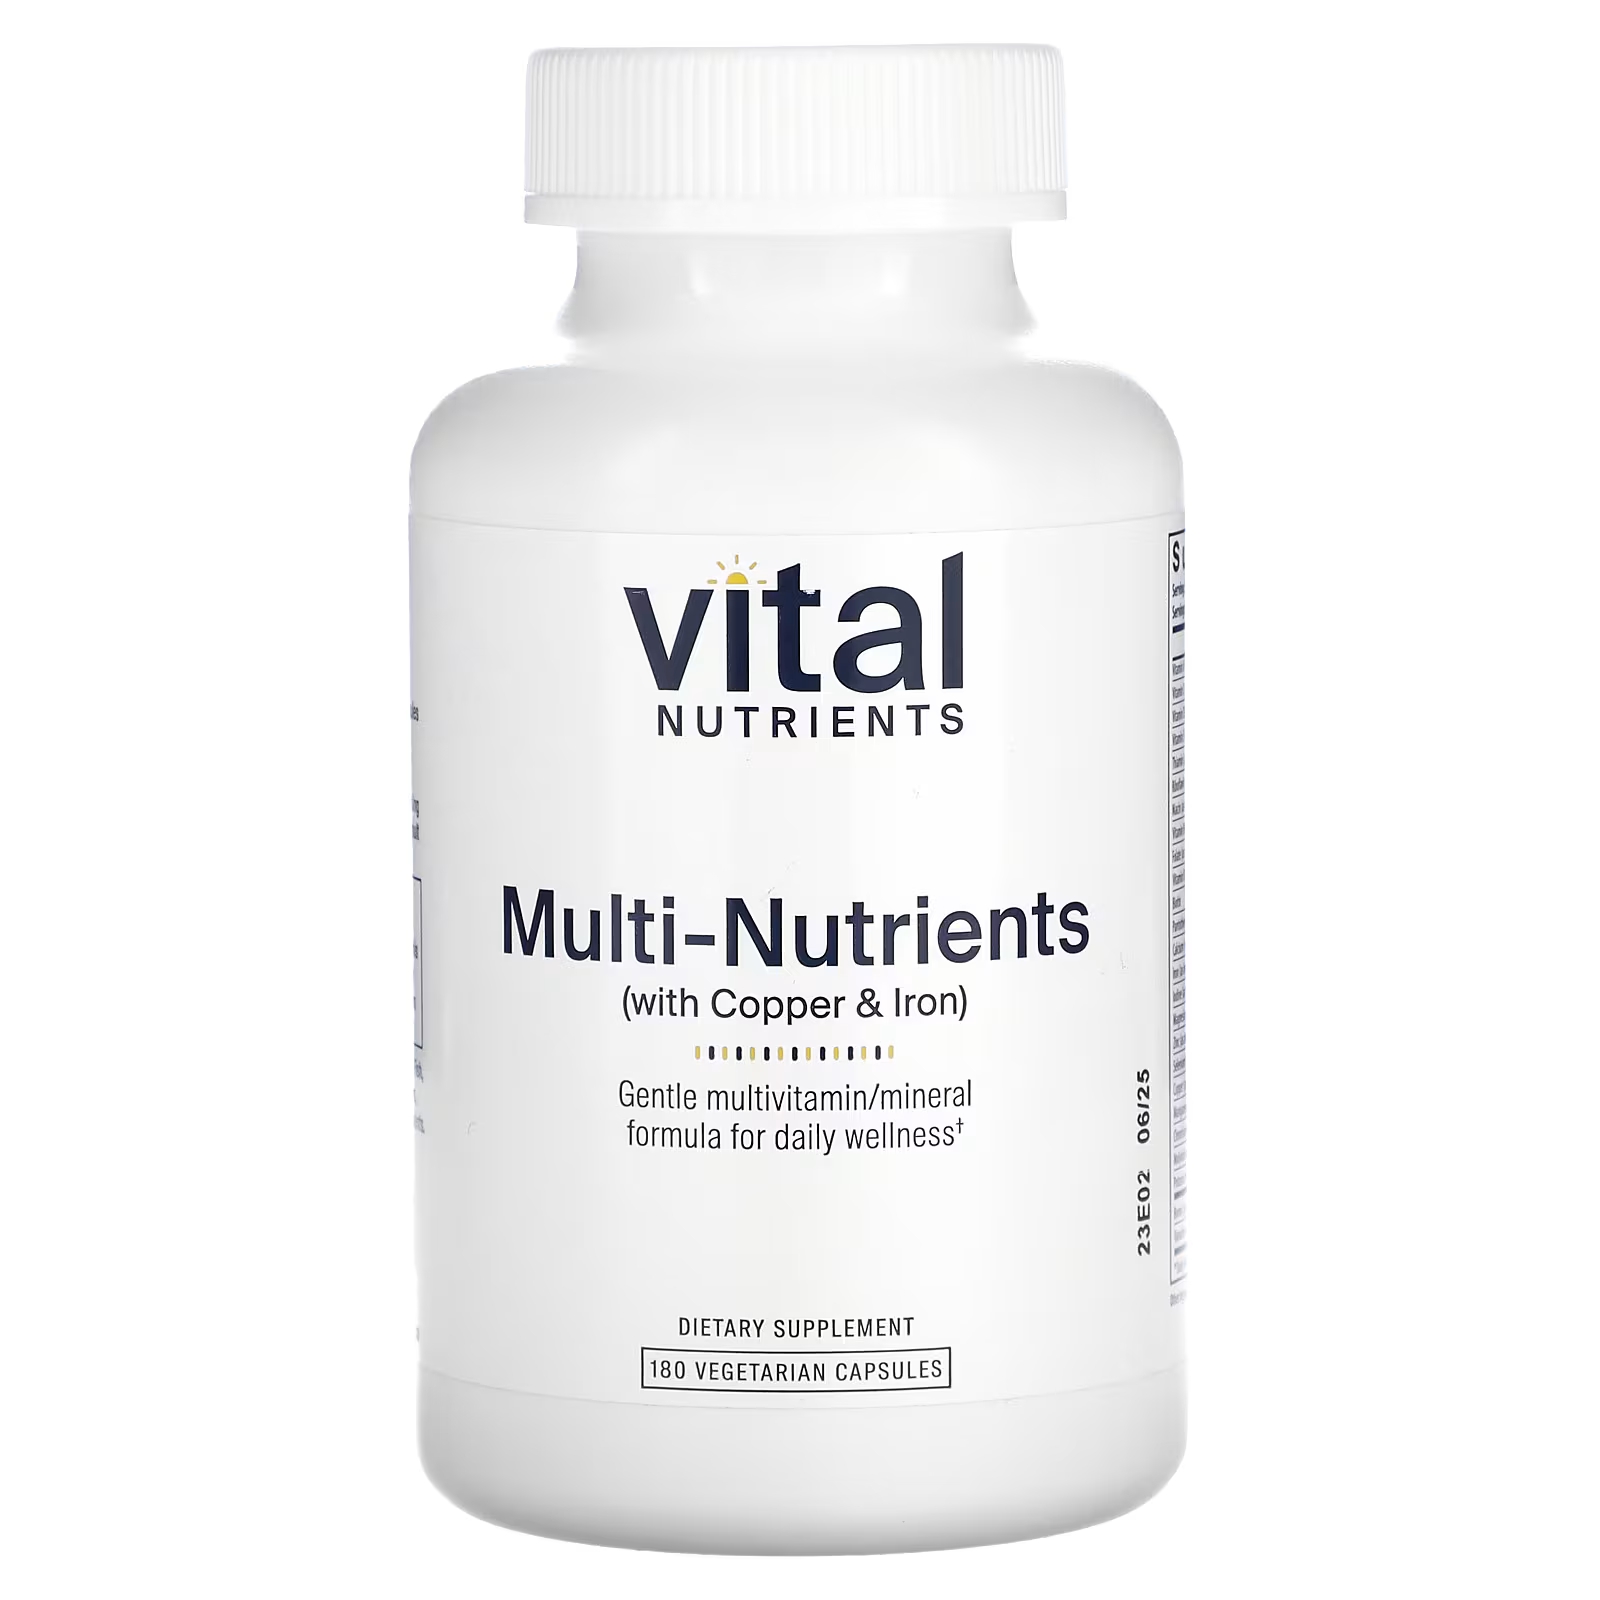 Пищевая добавка с медью и железом Vital Nutrients Multi-Nutrients, 180 капсул